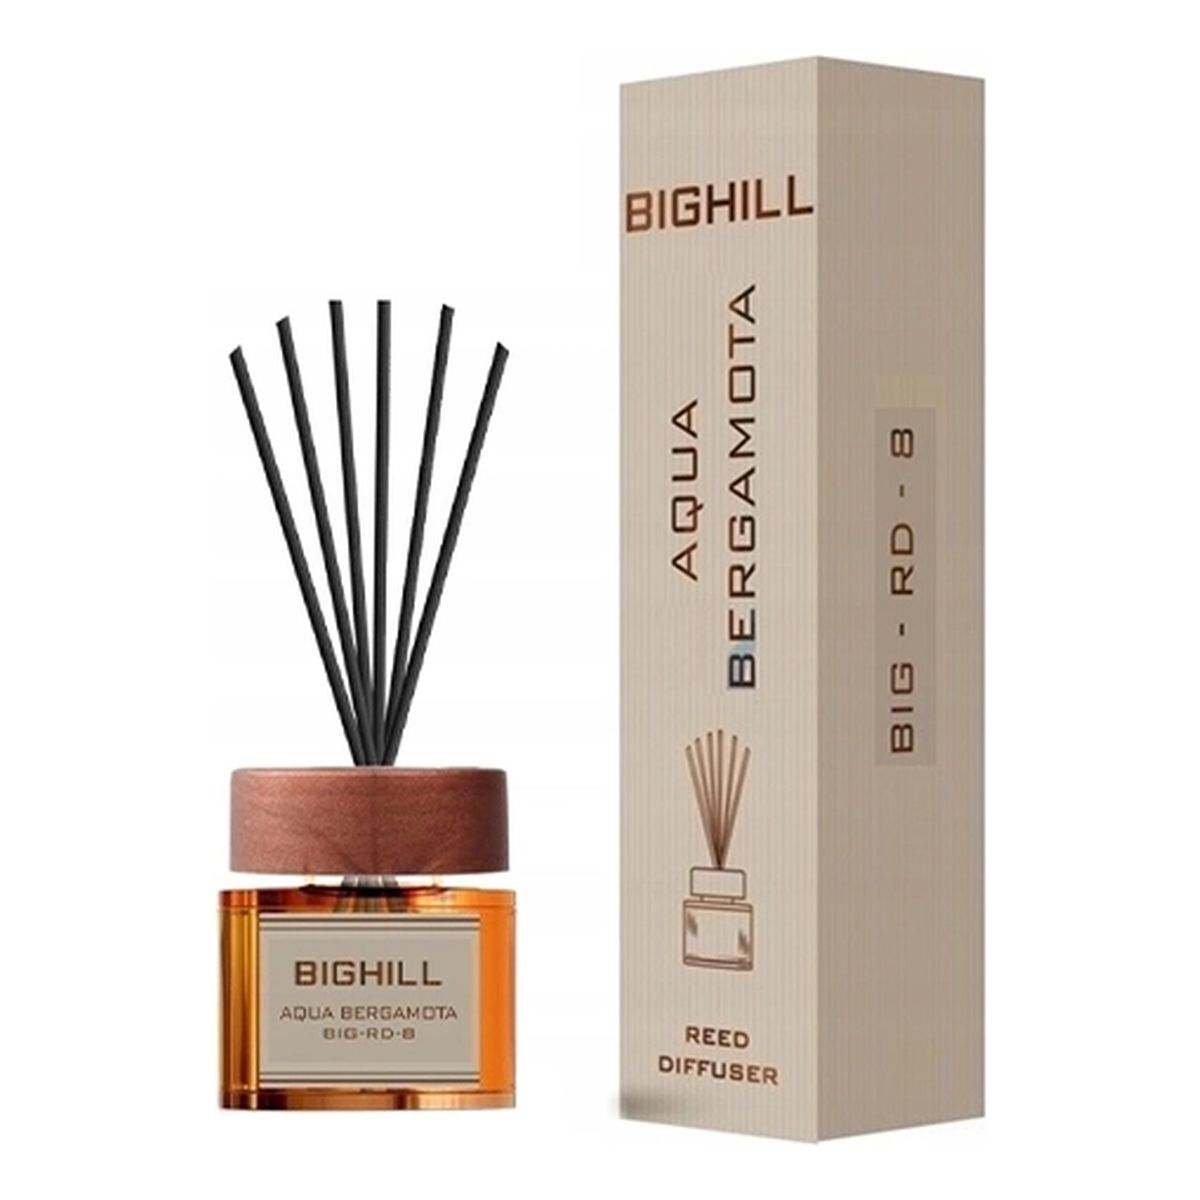 Bighill Ekskluzywny dyfuzor zapachowy z patyczkami Kirke + Aqua Bergamota 2x120ml